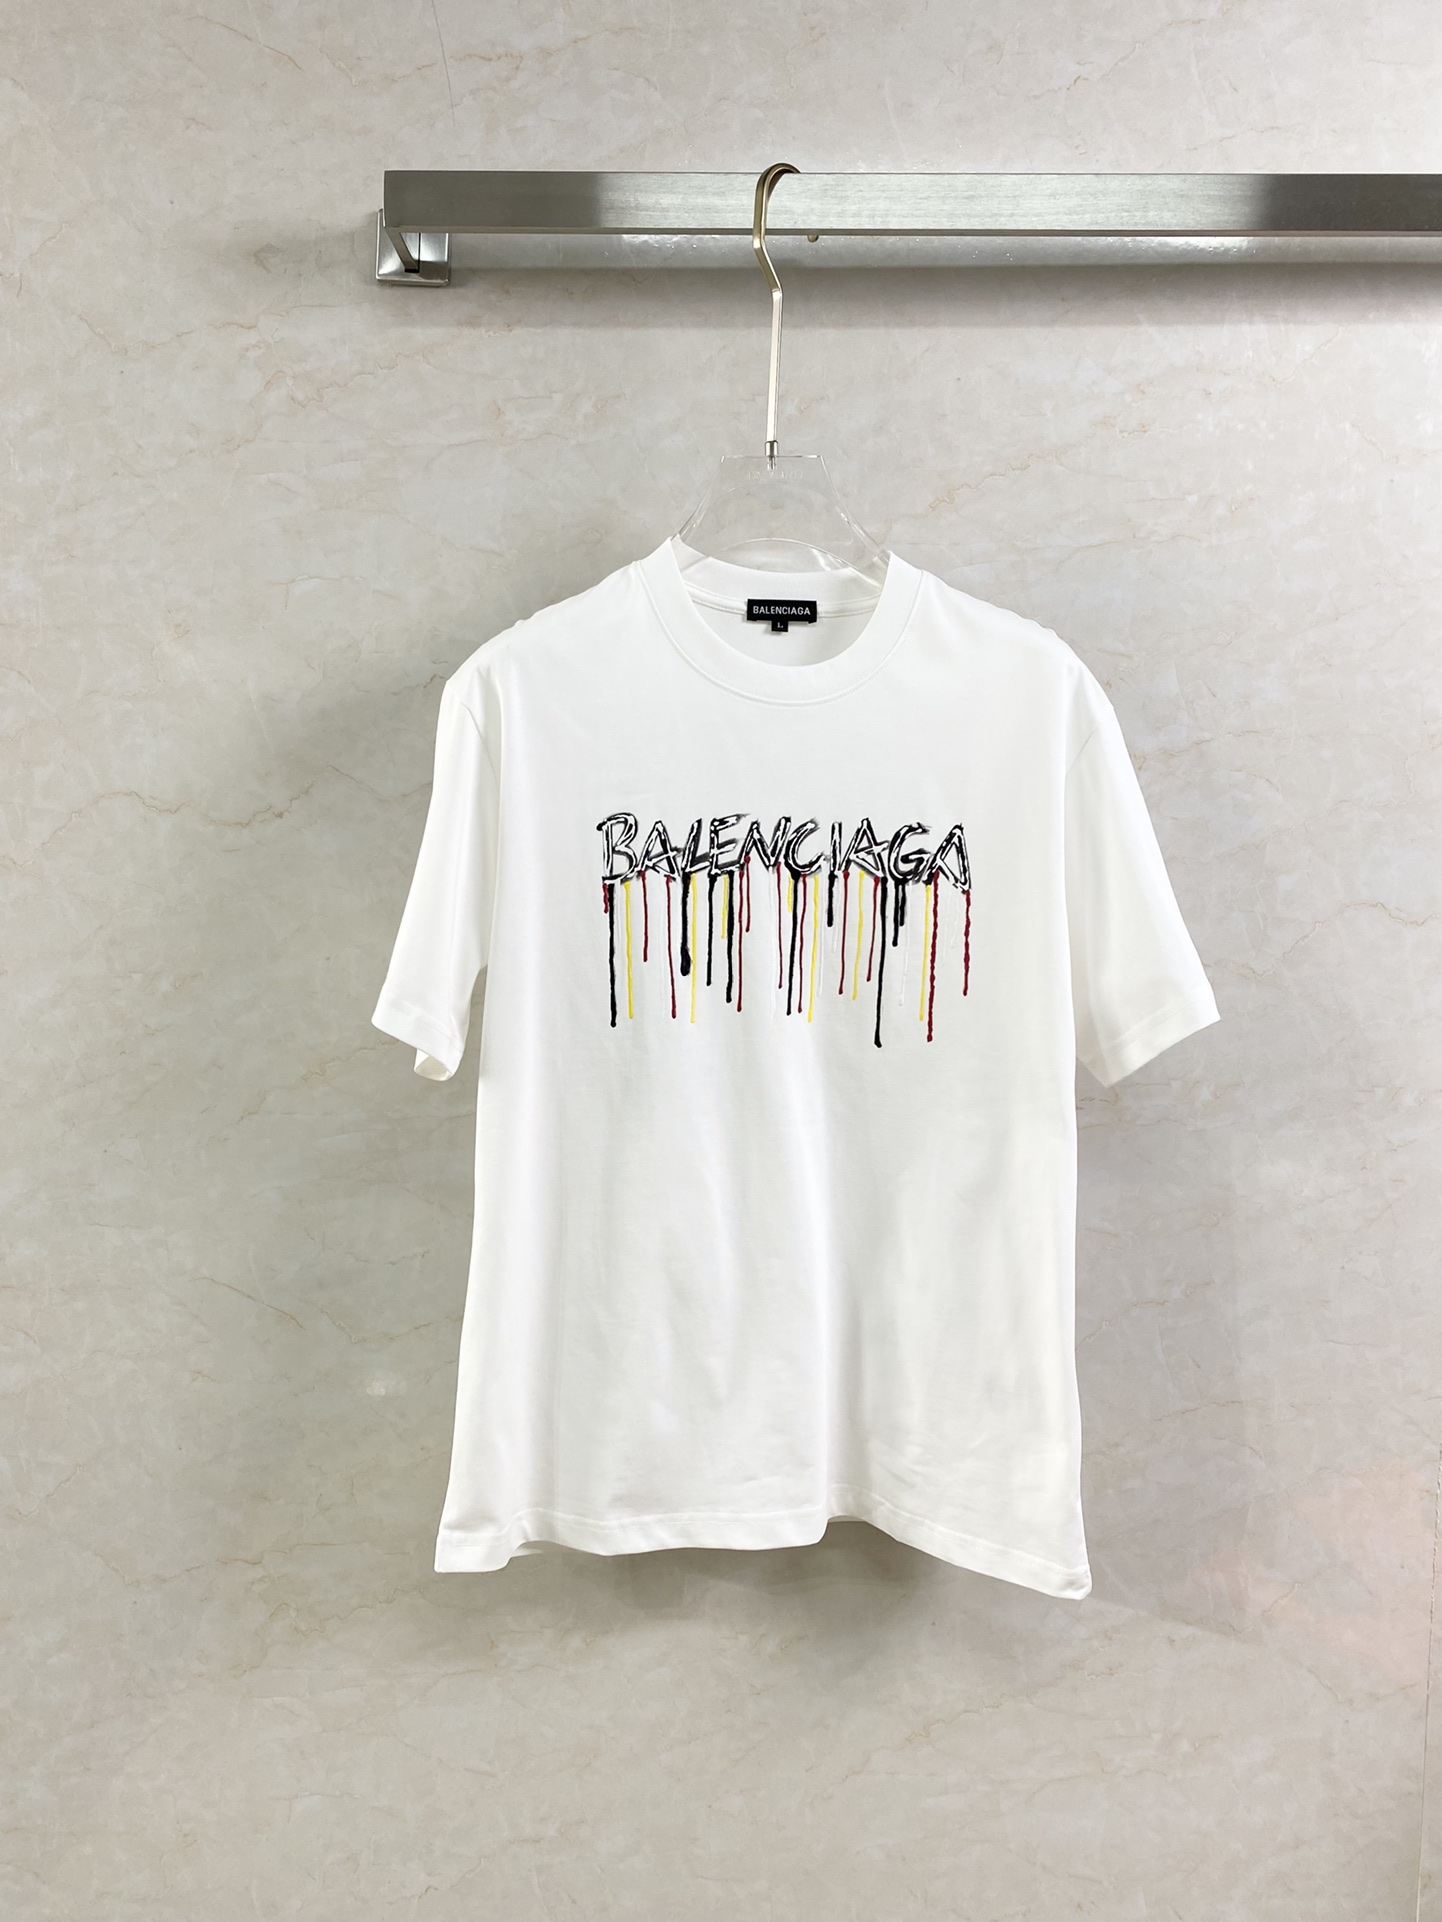 Balenciaga Kleding T-Shirt Replica kopen
 Katoen Dubbele garens katoen Lente/Zomercollectie